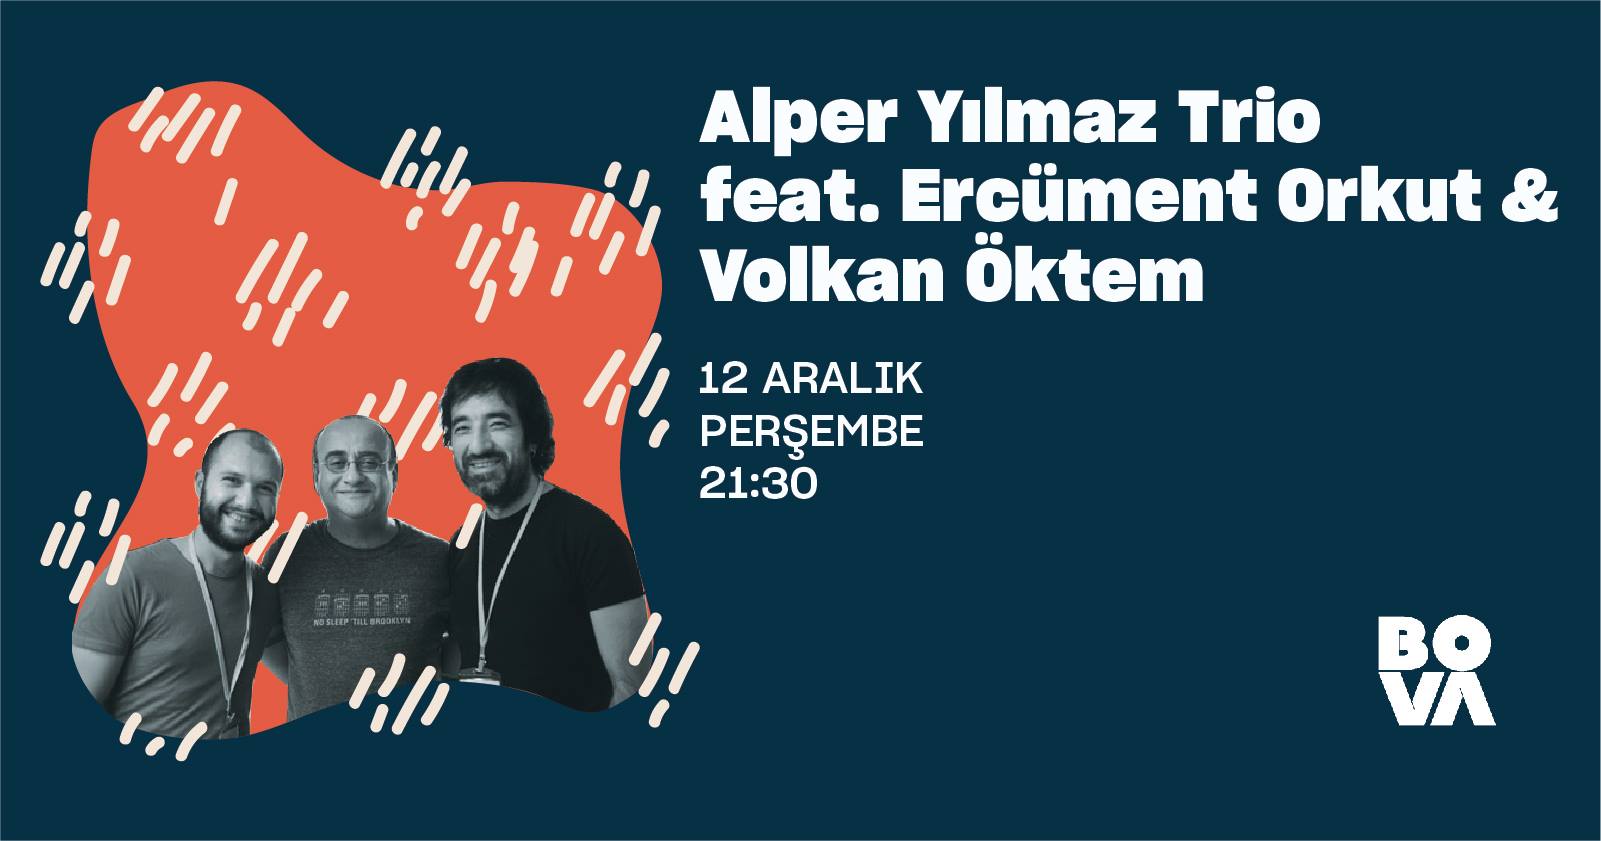 Alper Yılmaz Trio feat. Ercüment Orkut & Volkan Öktem